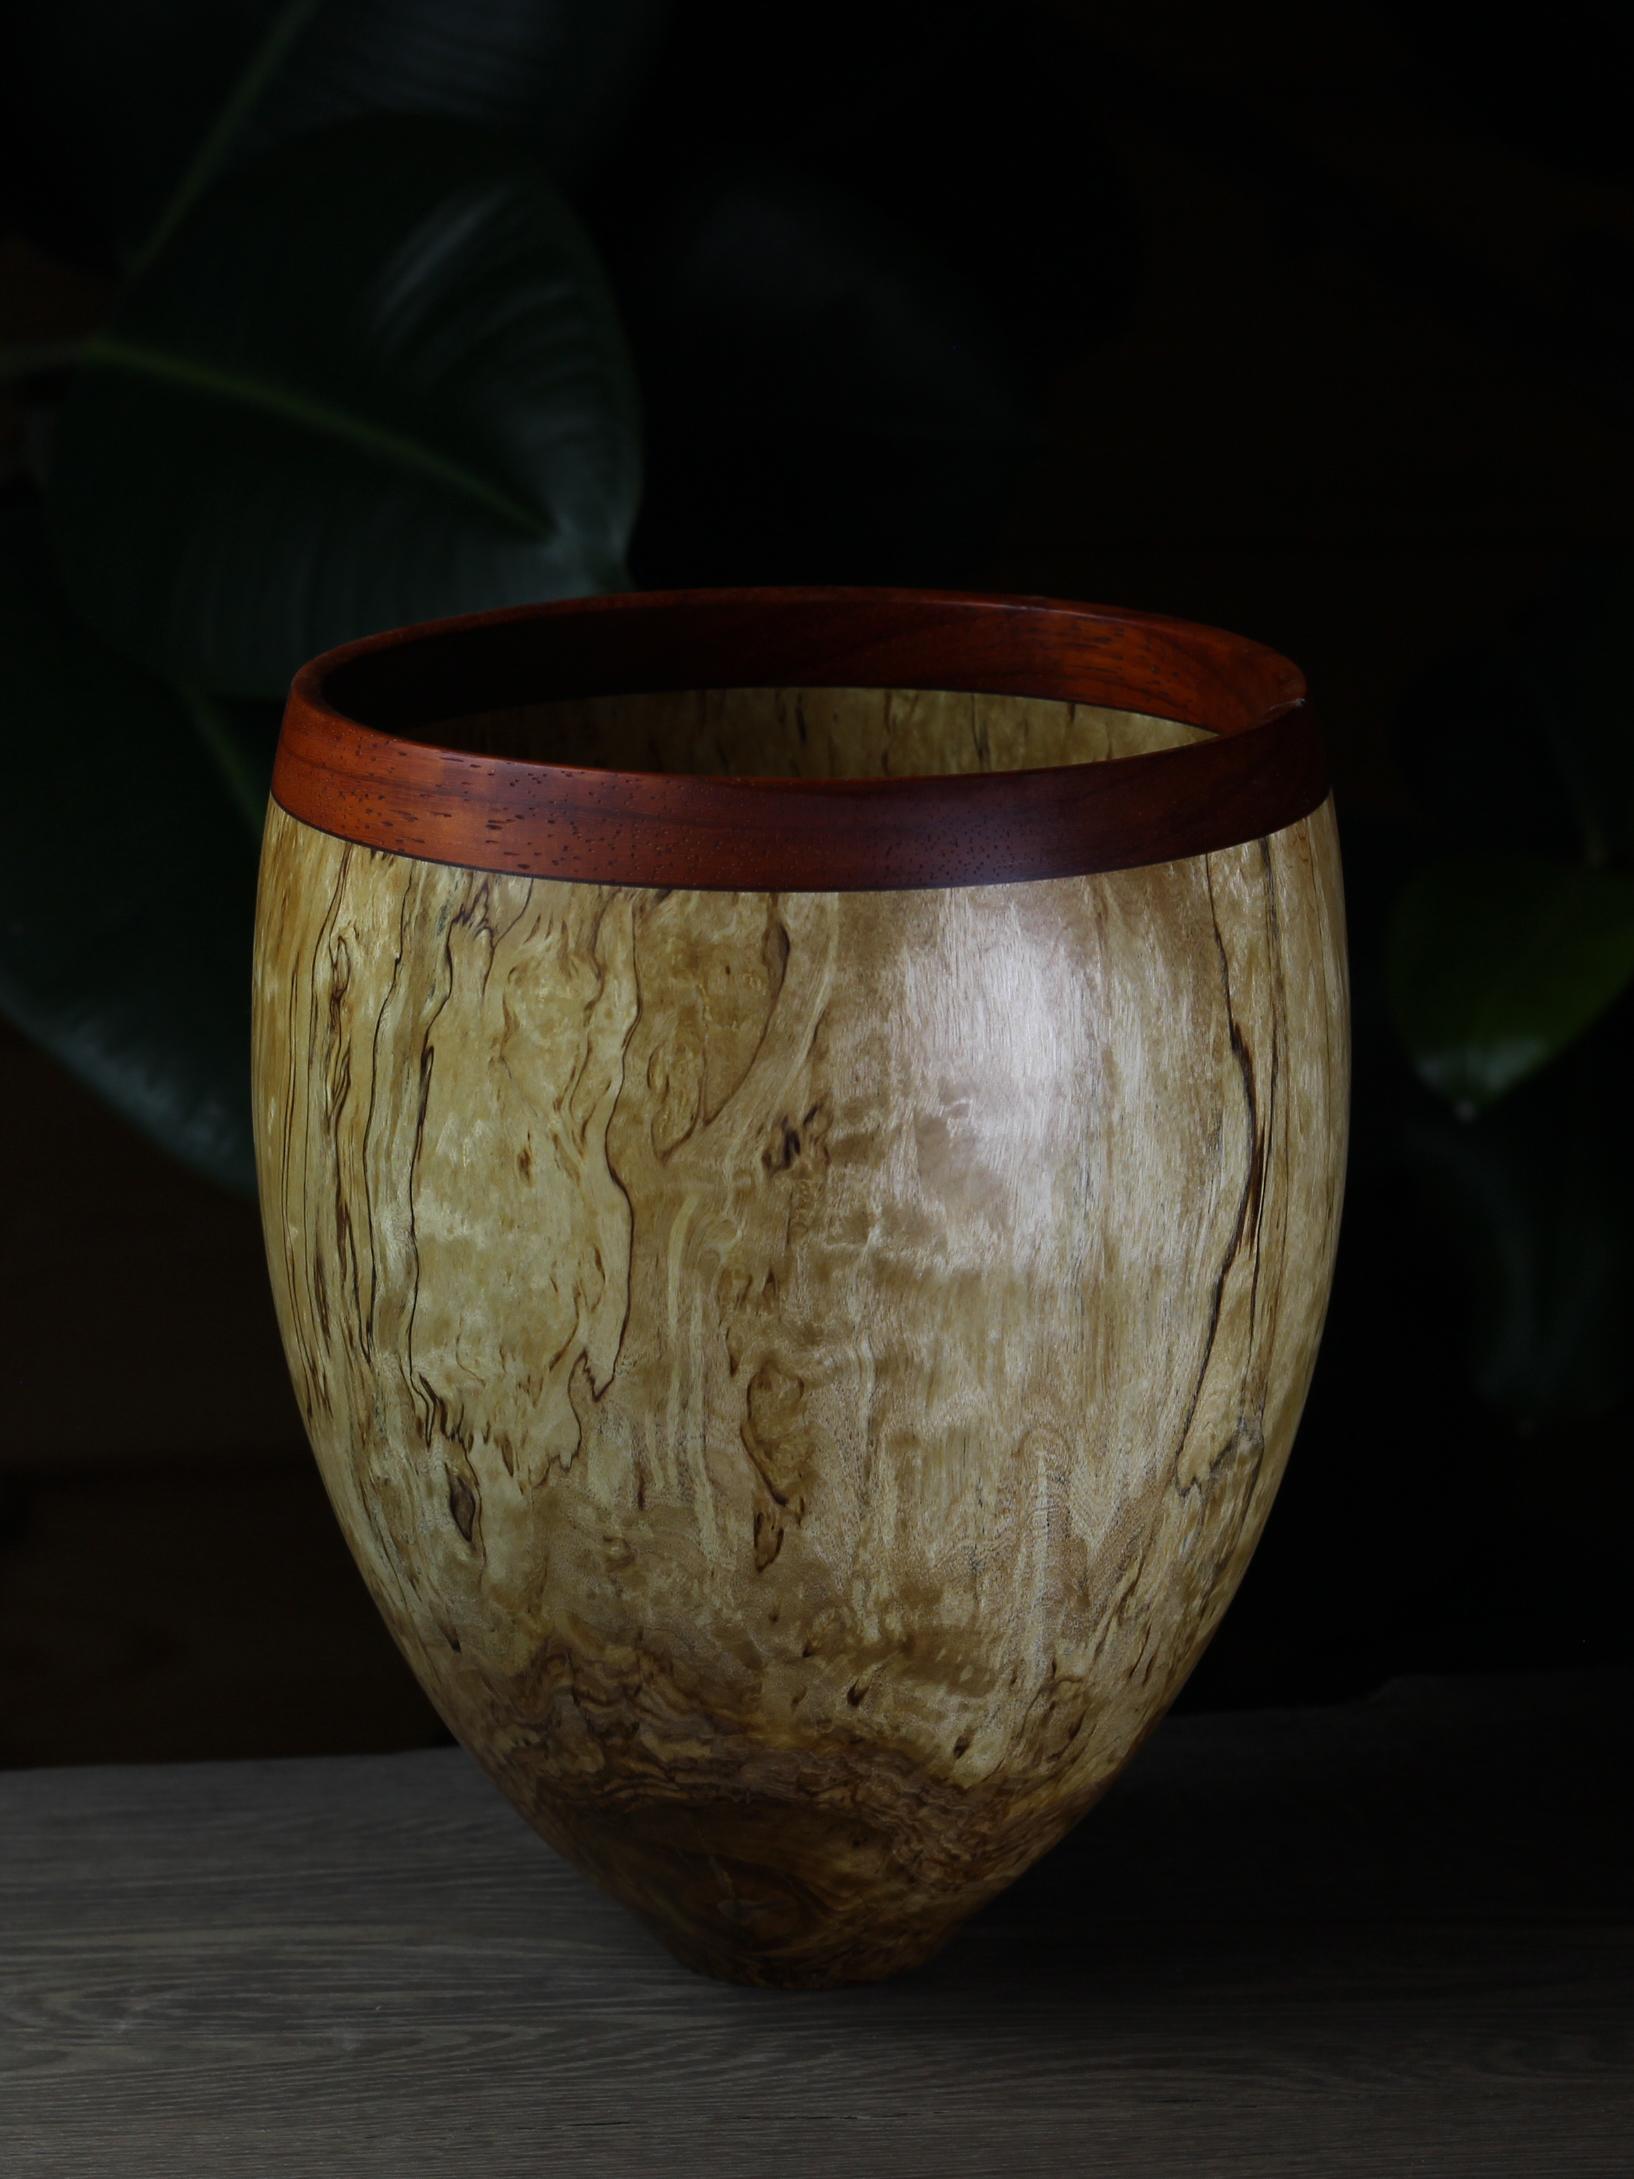 Masur birch bowl by Vlad Droz.
Dimensions: ?21 x H17 cm.
Materials: Masur birch, Padouk.
One of a kind. 

Vlad Droz
